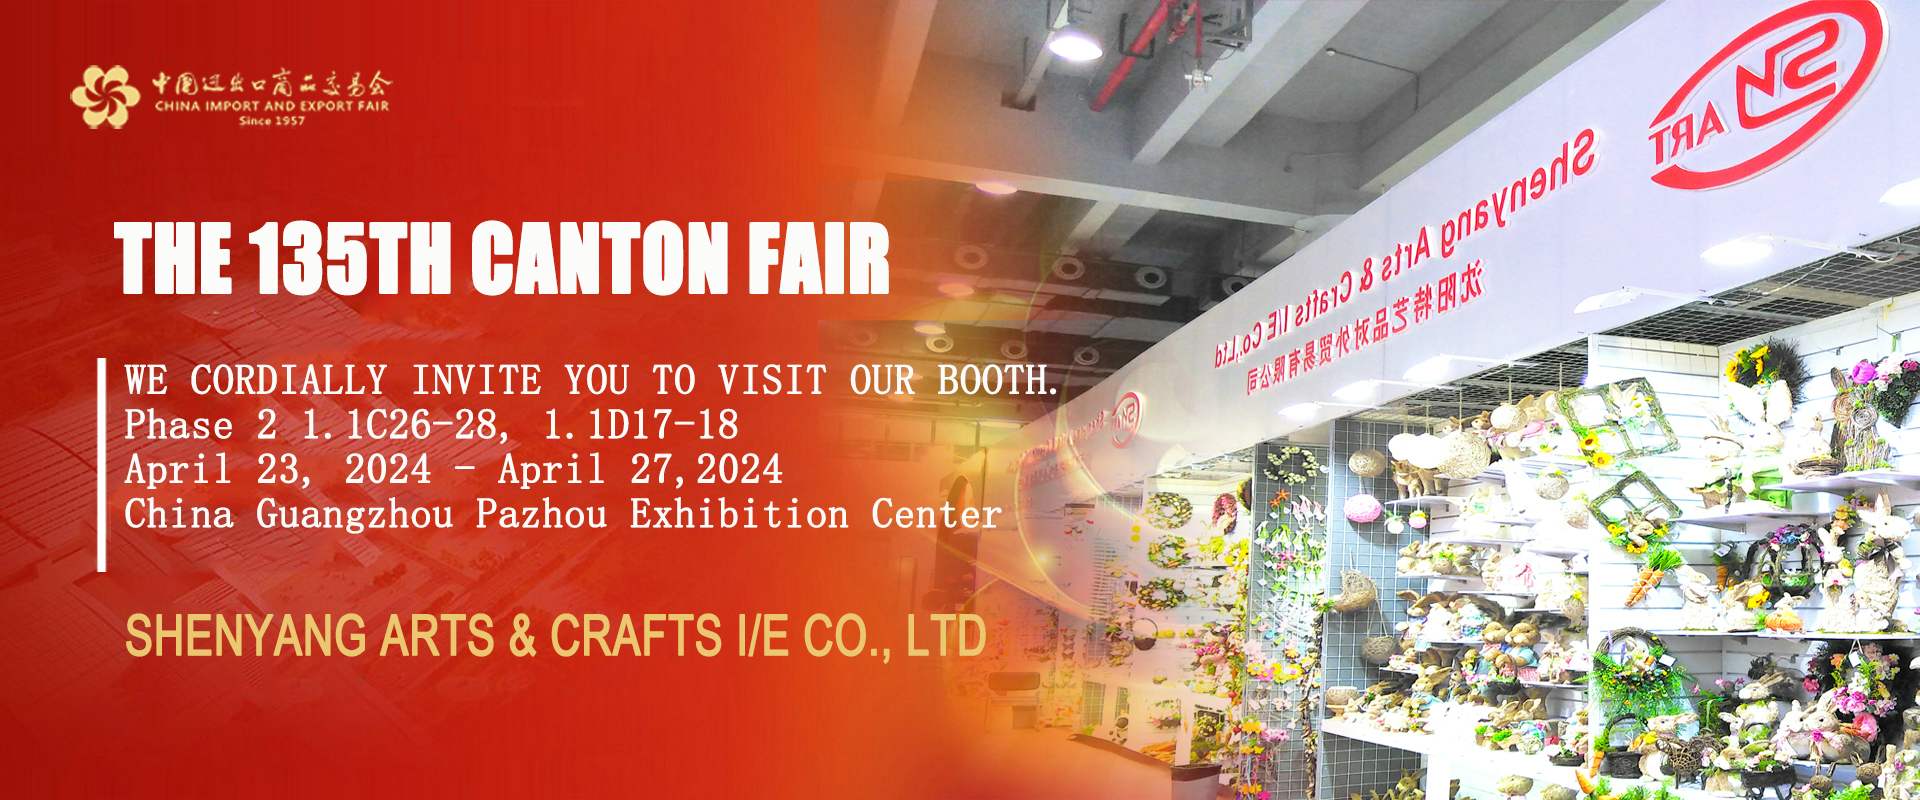 We kijken ernaar uit u te ontmoeten op de 135e Canton Fair!